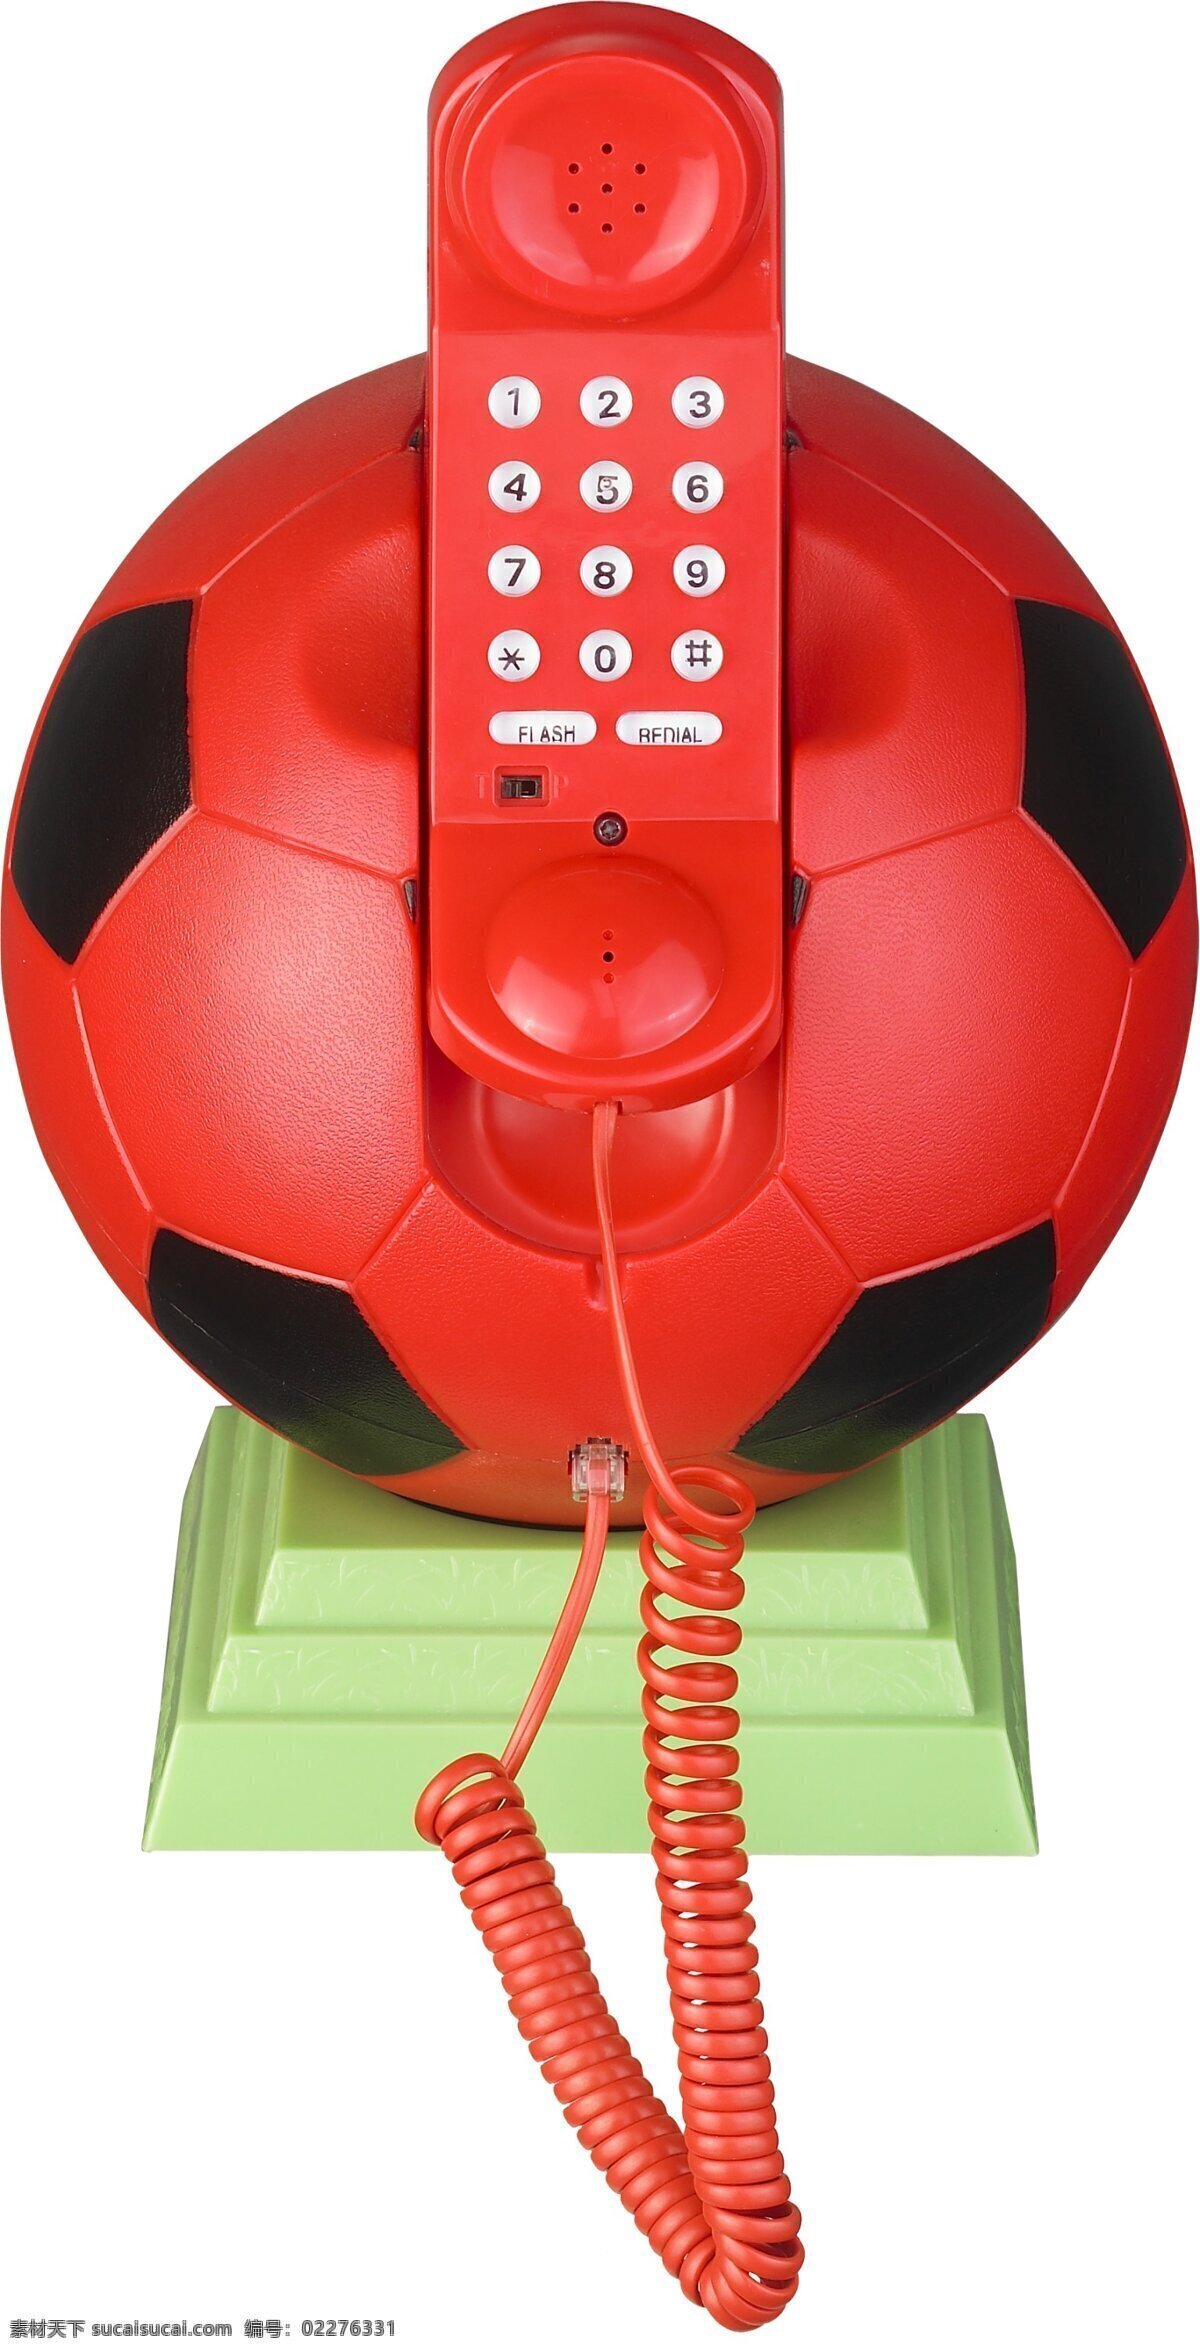 足球形状 电话机 形象化 座机 听筒 对外联络 人间沟通 人间交流 通讯设备 通讯工具 现代 生活 必备 物件 通讯工具之一 生活用品 生活素材 生活百科